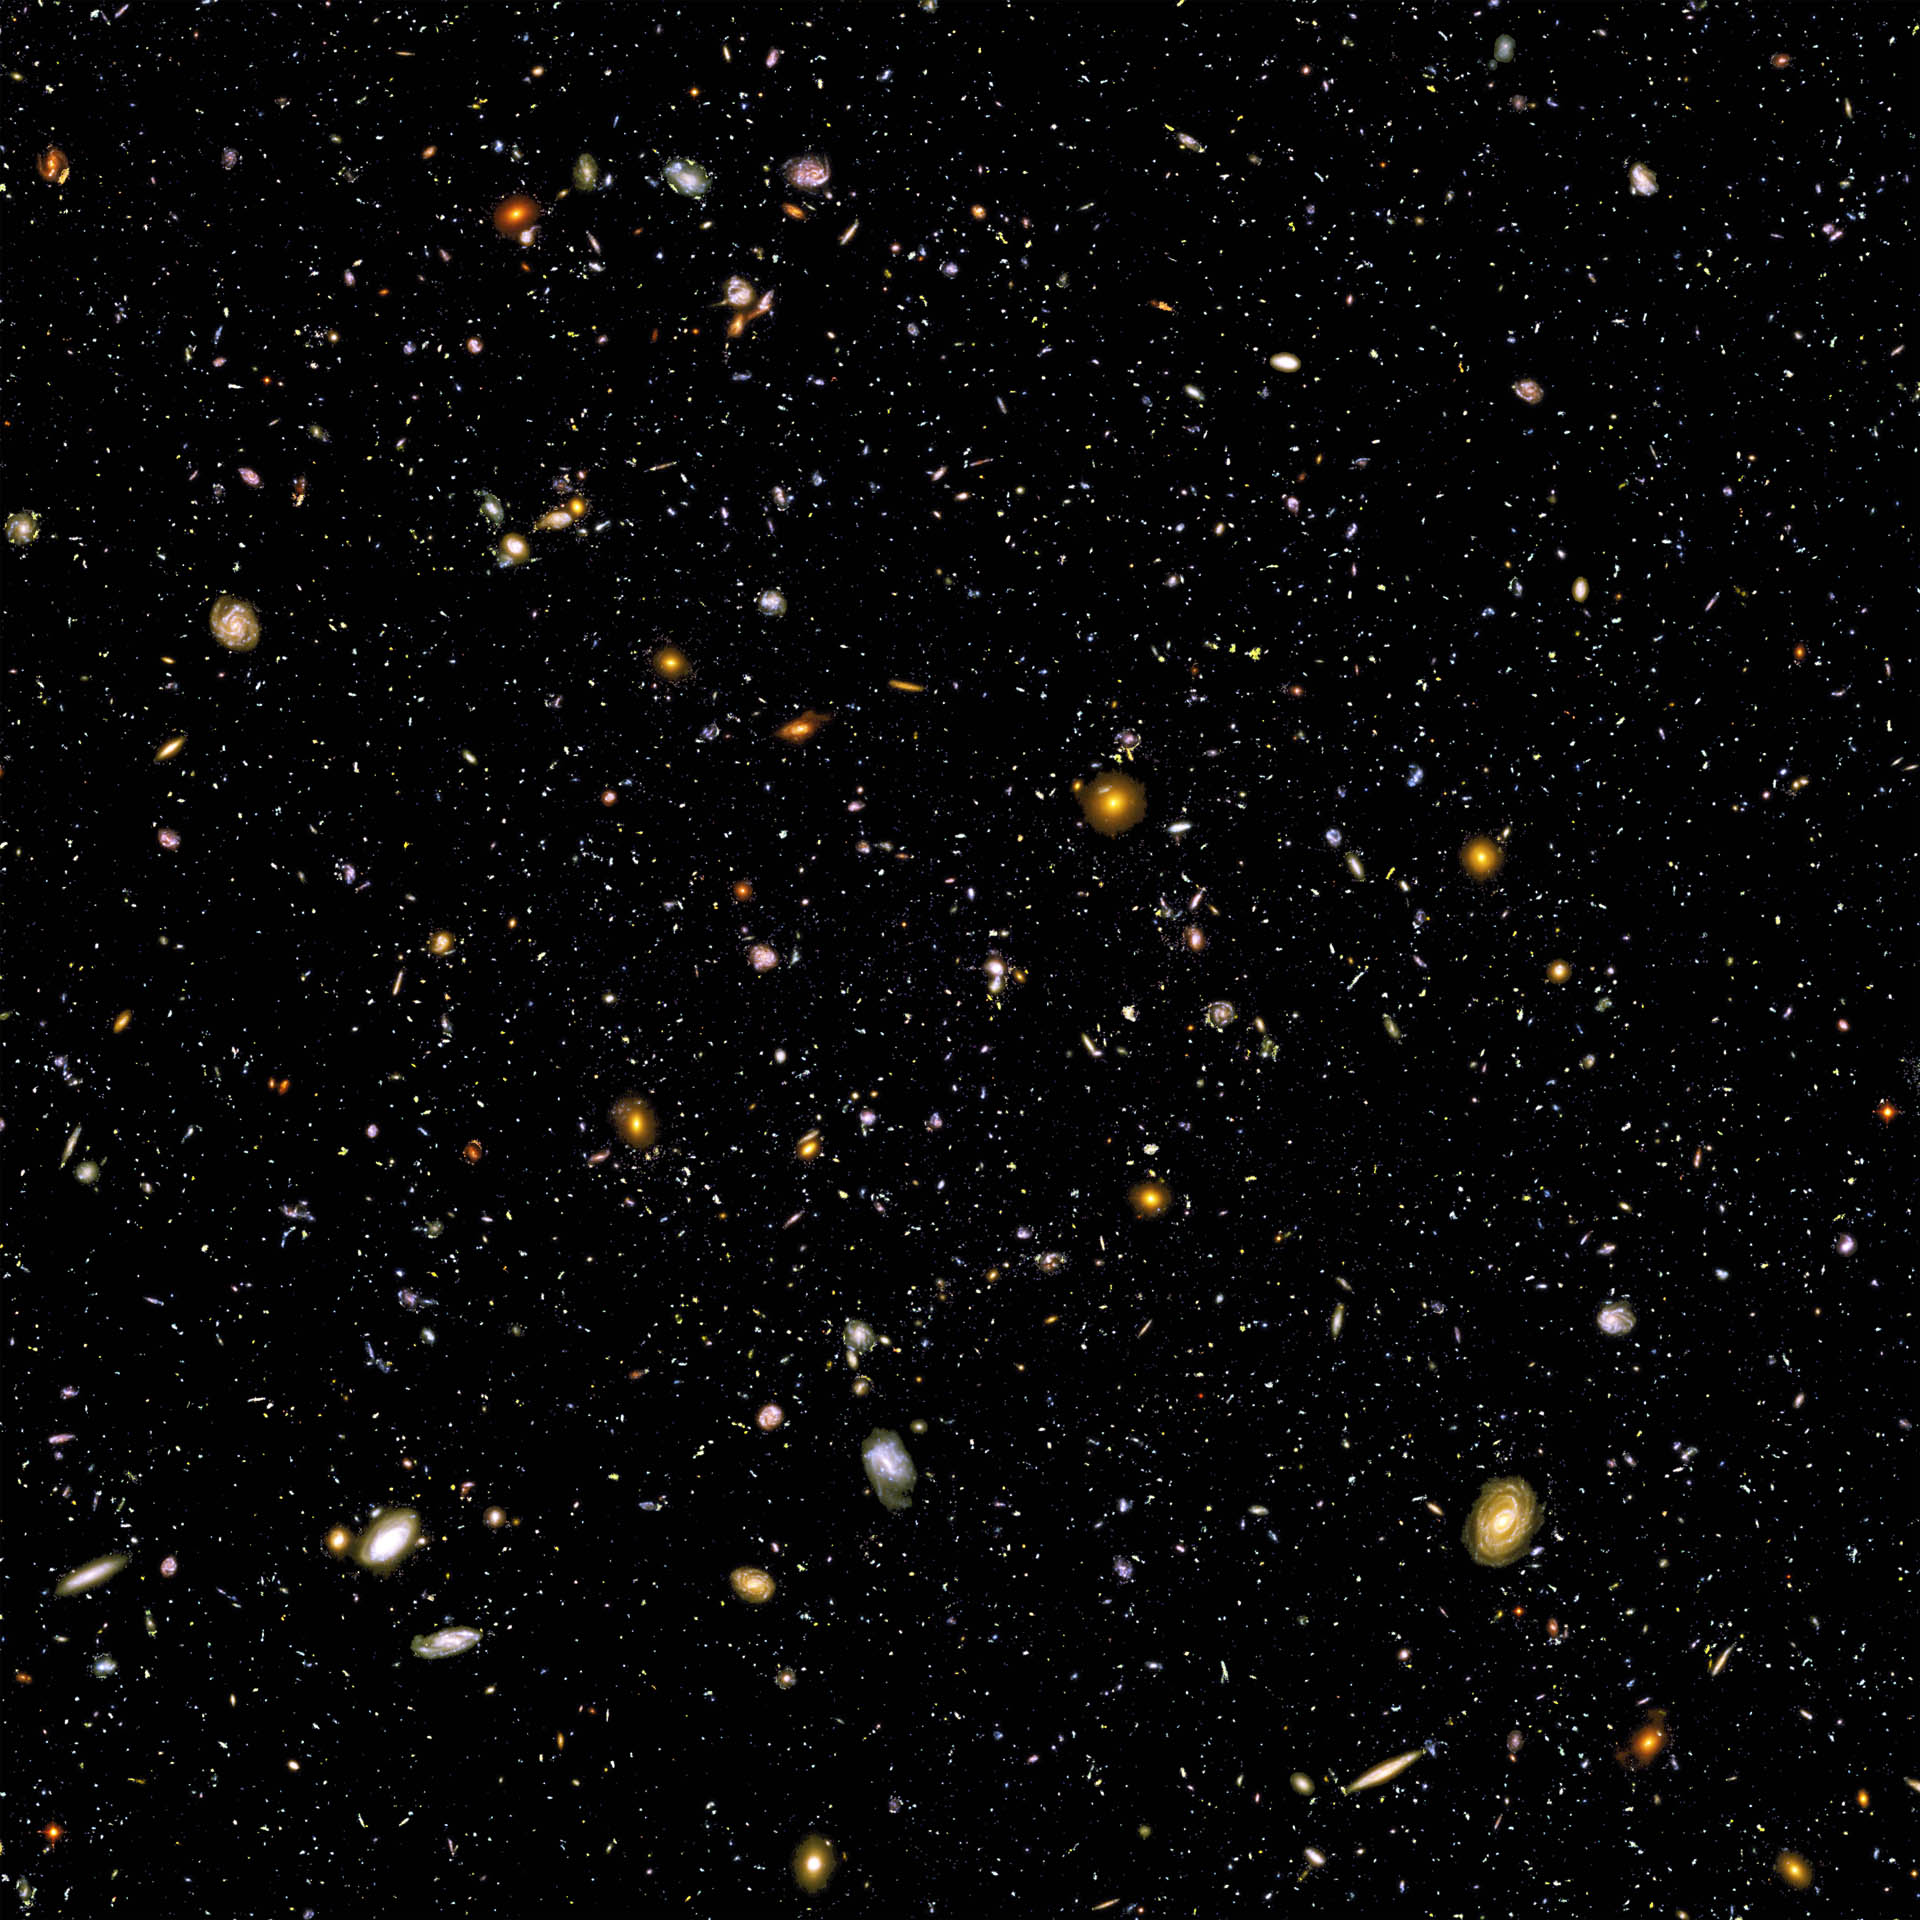 Hubble Ultra Deep Field en couches4_1920.jpg (Hubble Ultra Deep Field)